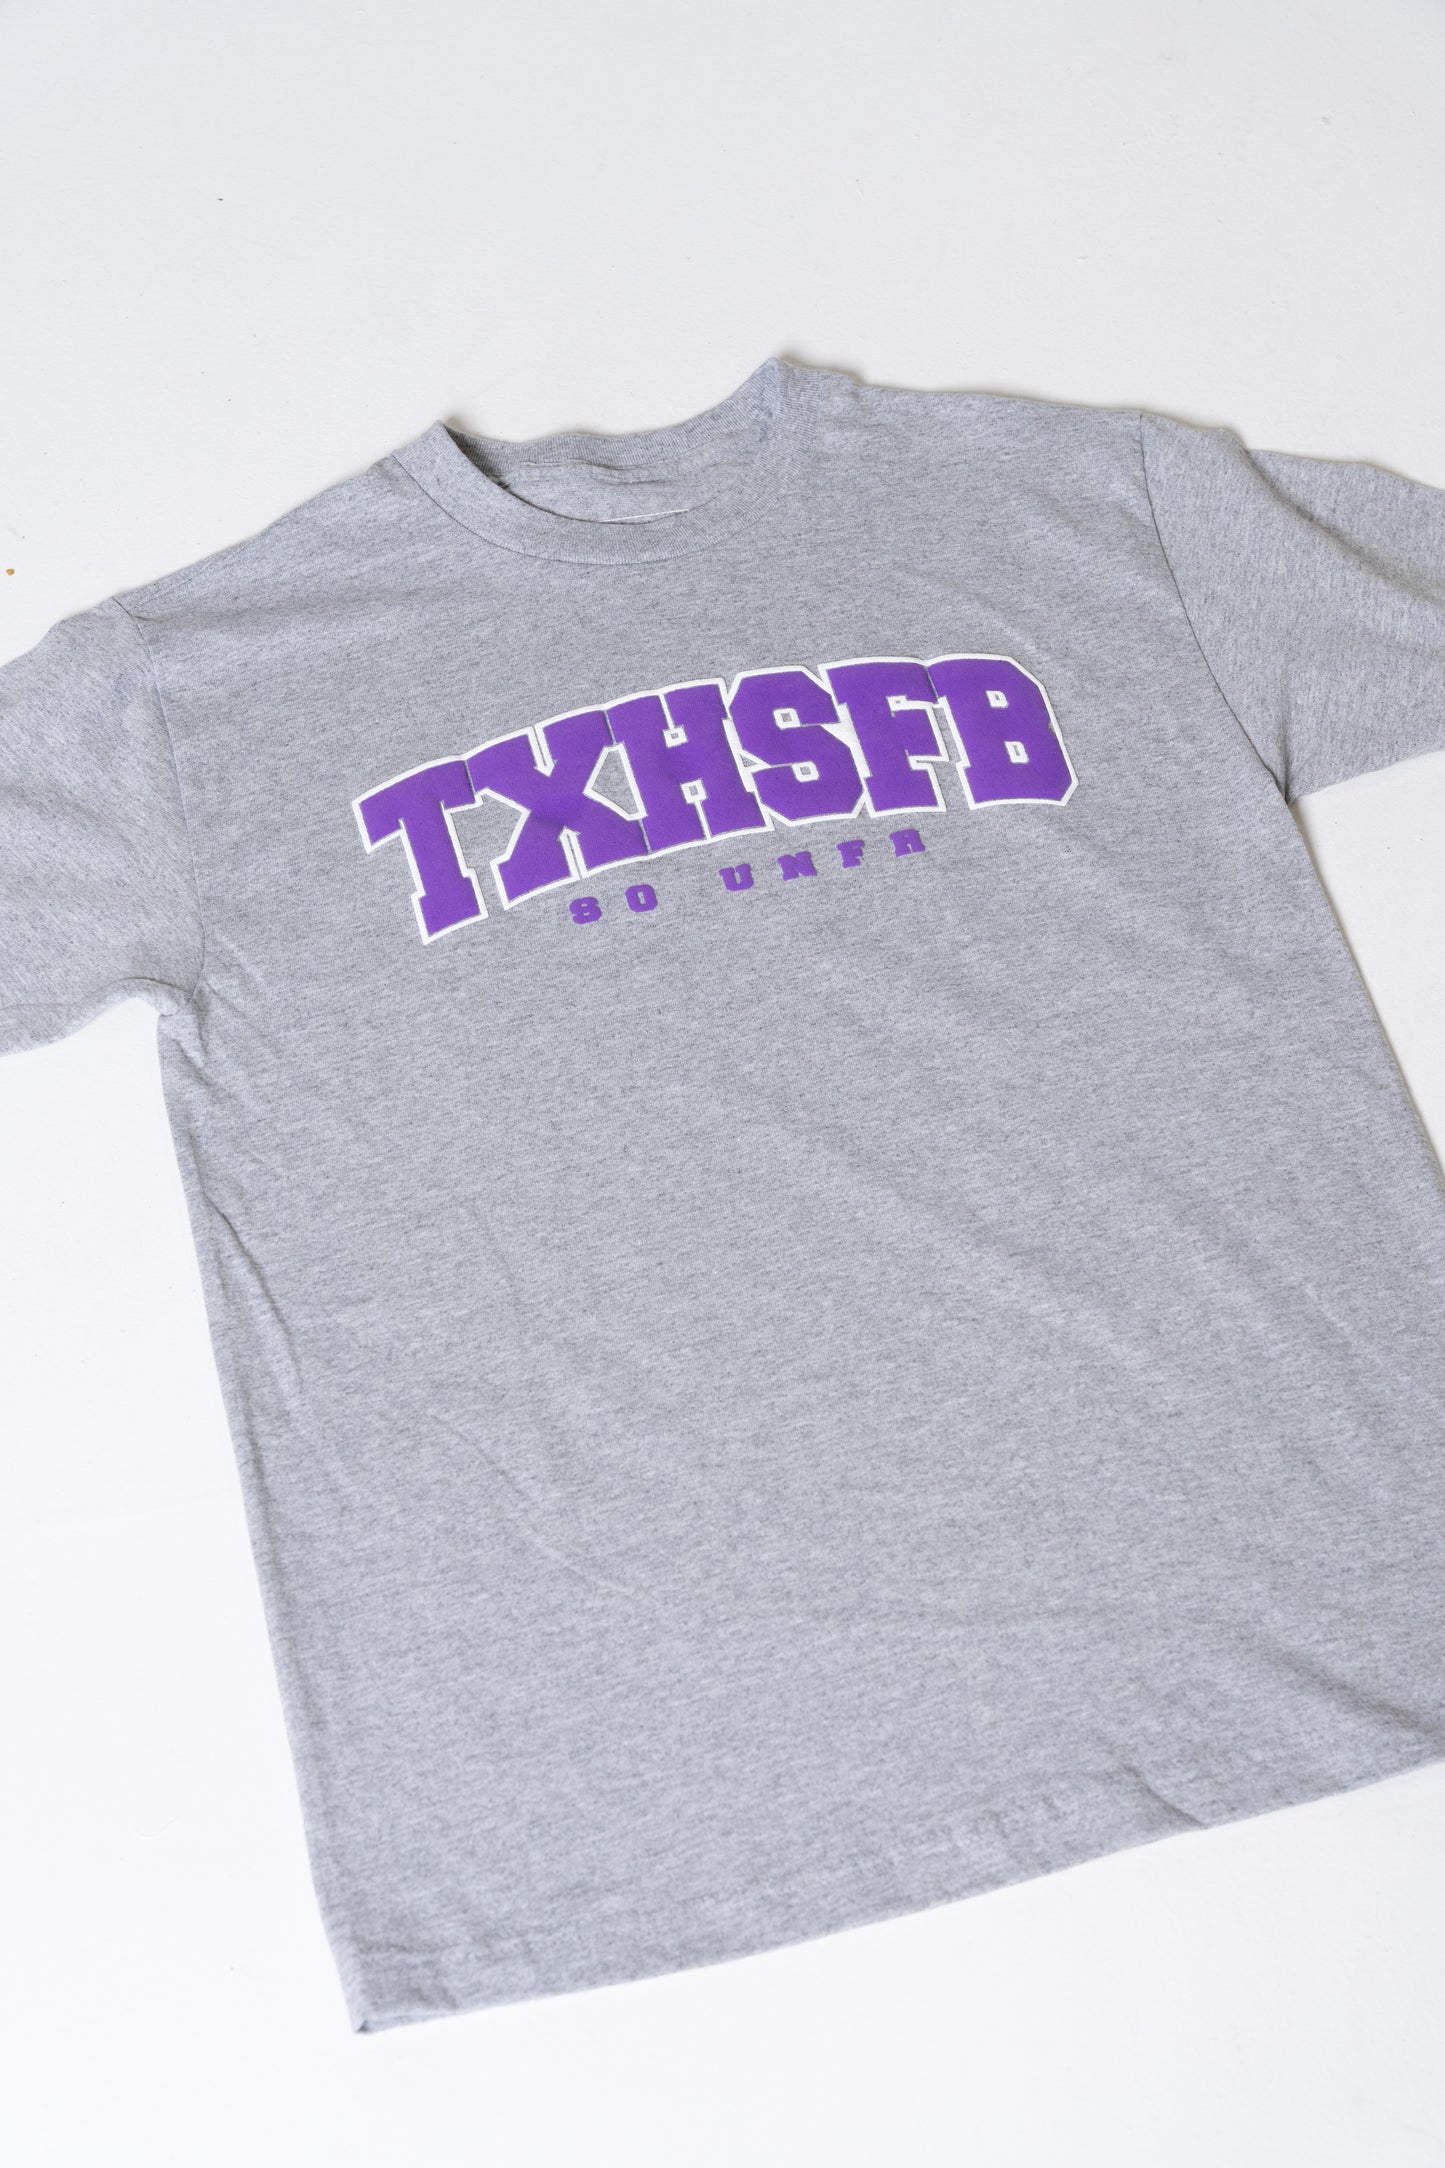 TXHSFB T-Shirt Purple/Grey